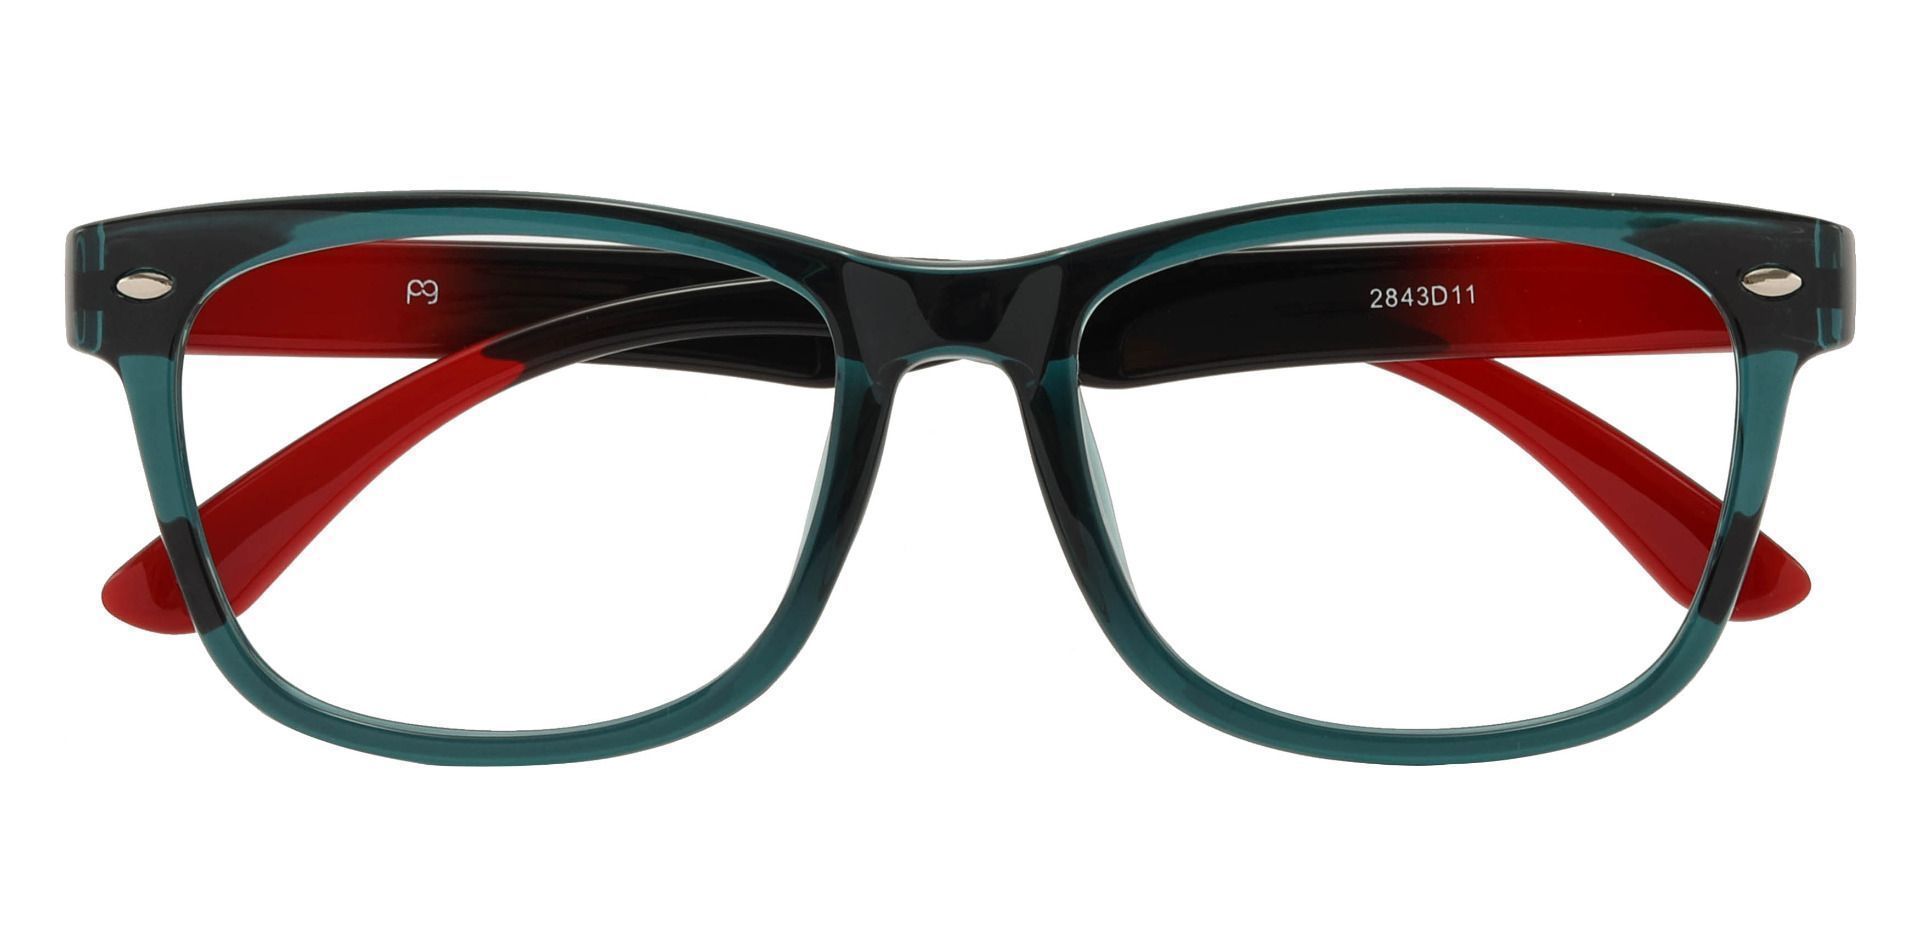 Oscar Rectangle Non-Rx Glasses - Green